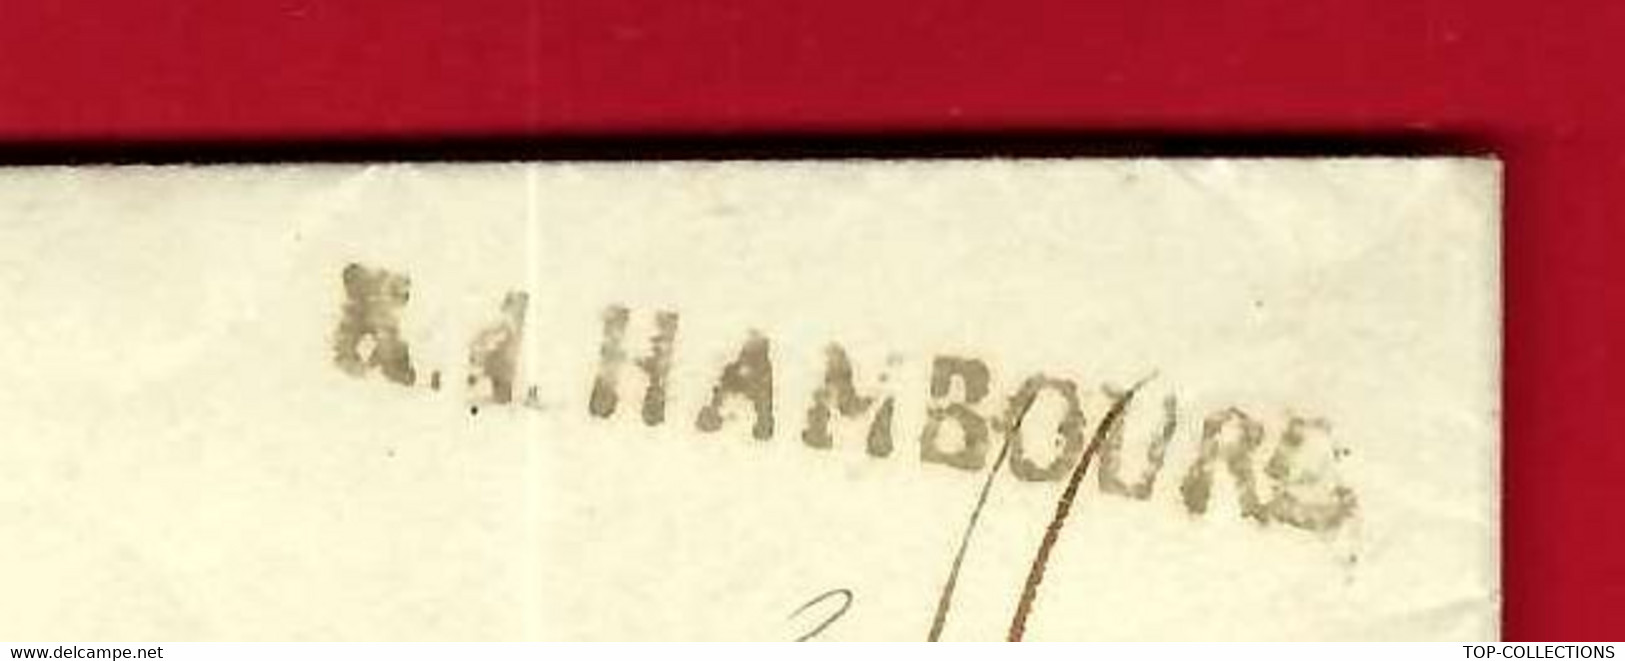 JUDAICA 1811 Hambourg Ville Hanséatique Rücker & Westhalen => Le Havre Foache Armateur PRET SUCRERIE EICHHOFF - Historische Dokumente